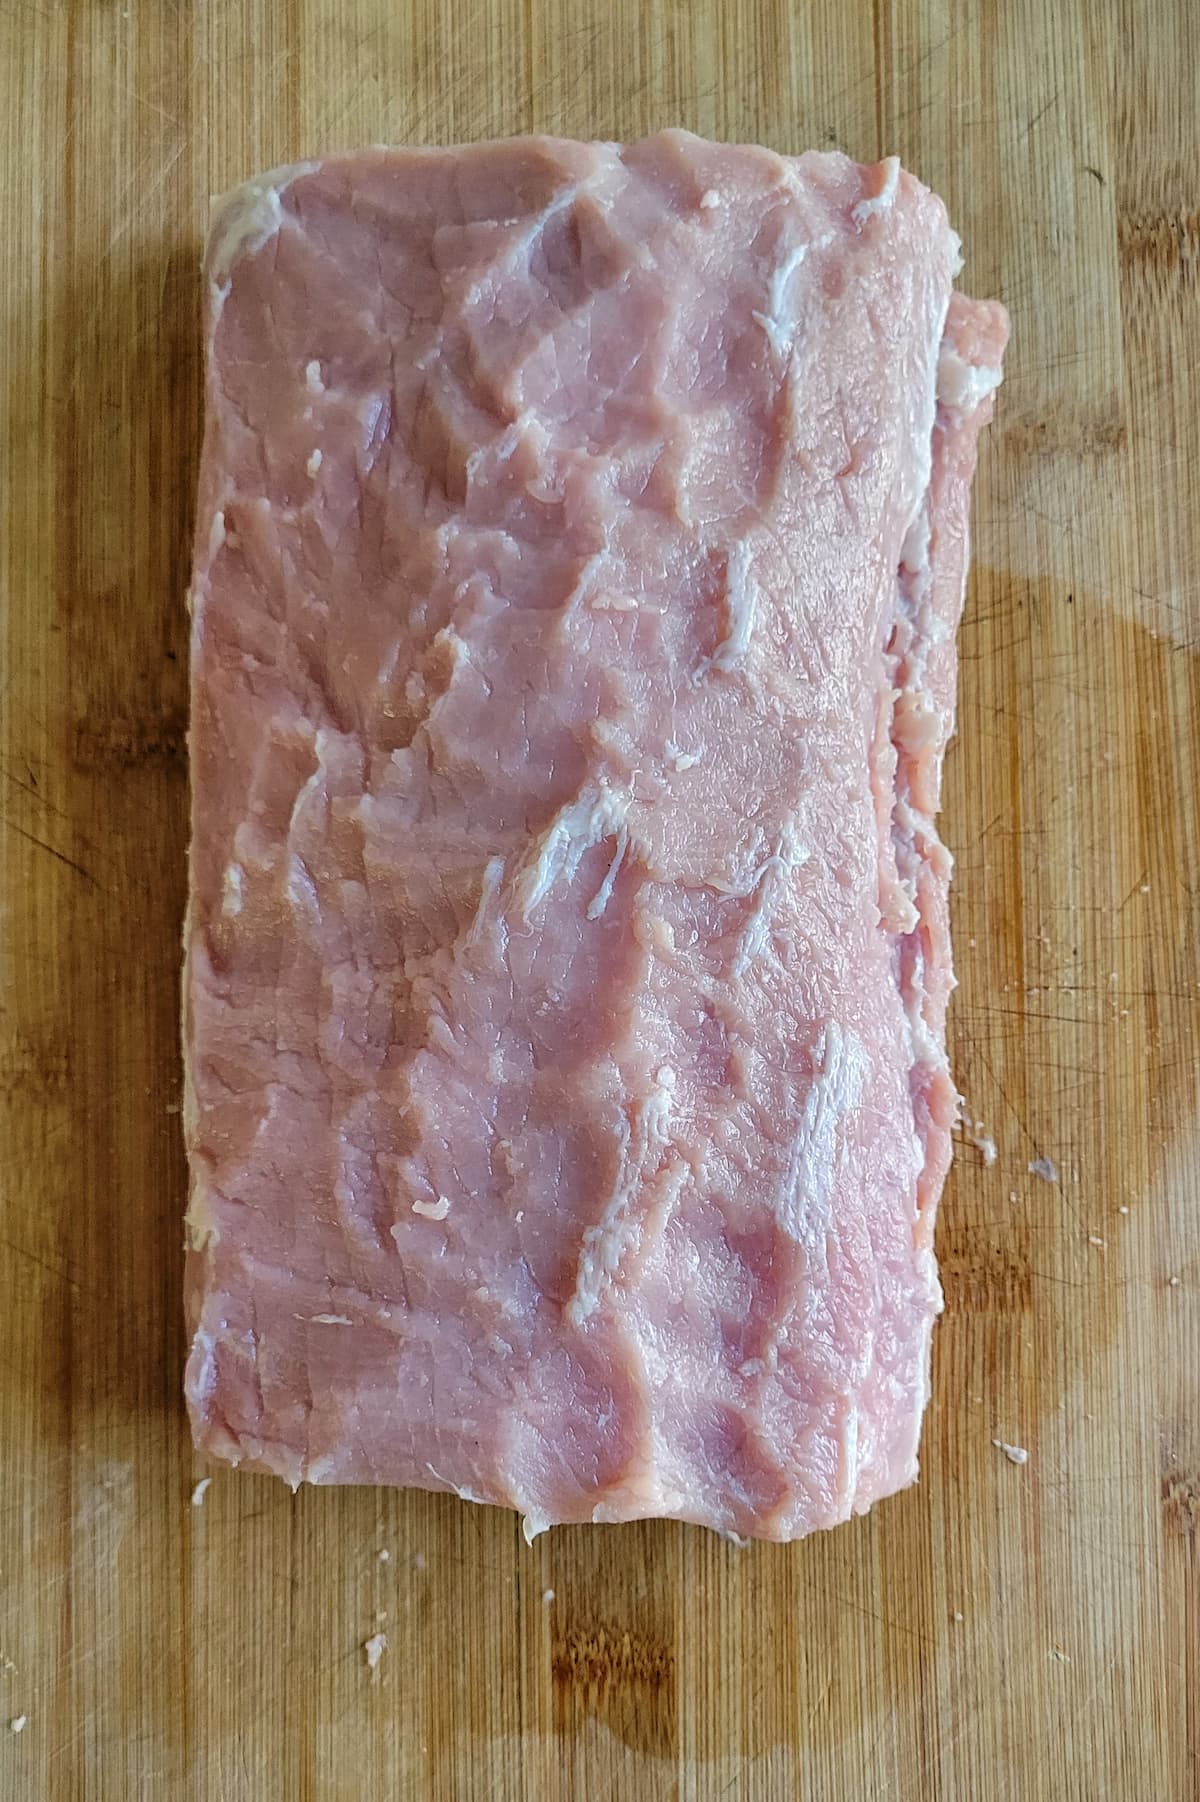 raw pork loin roast on a cutting board